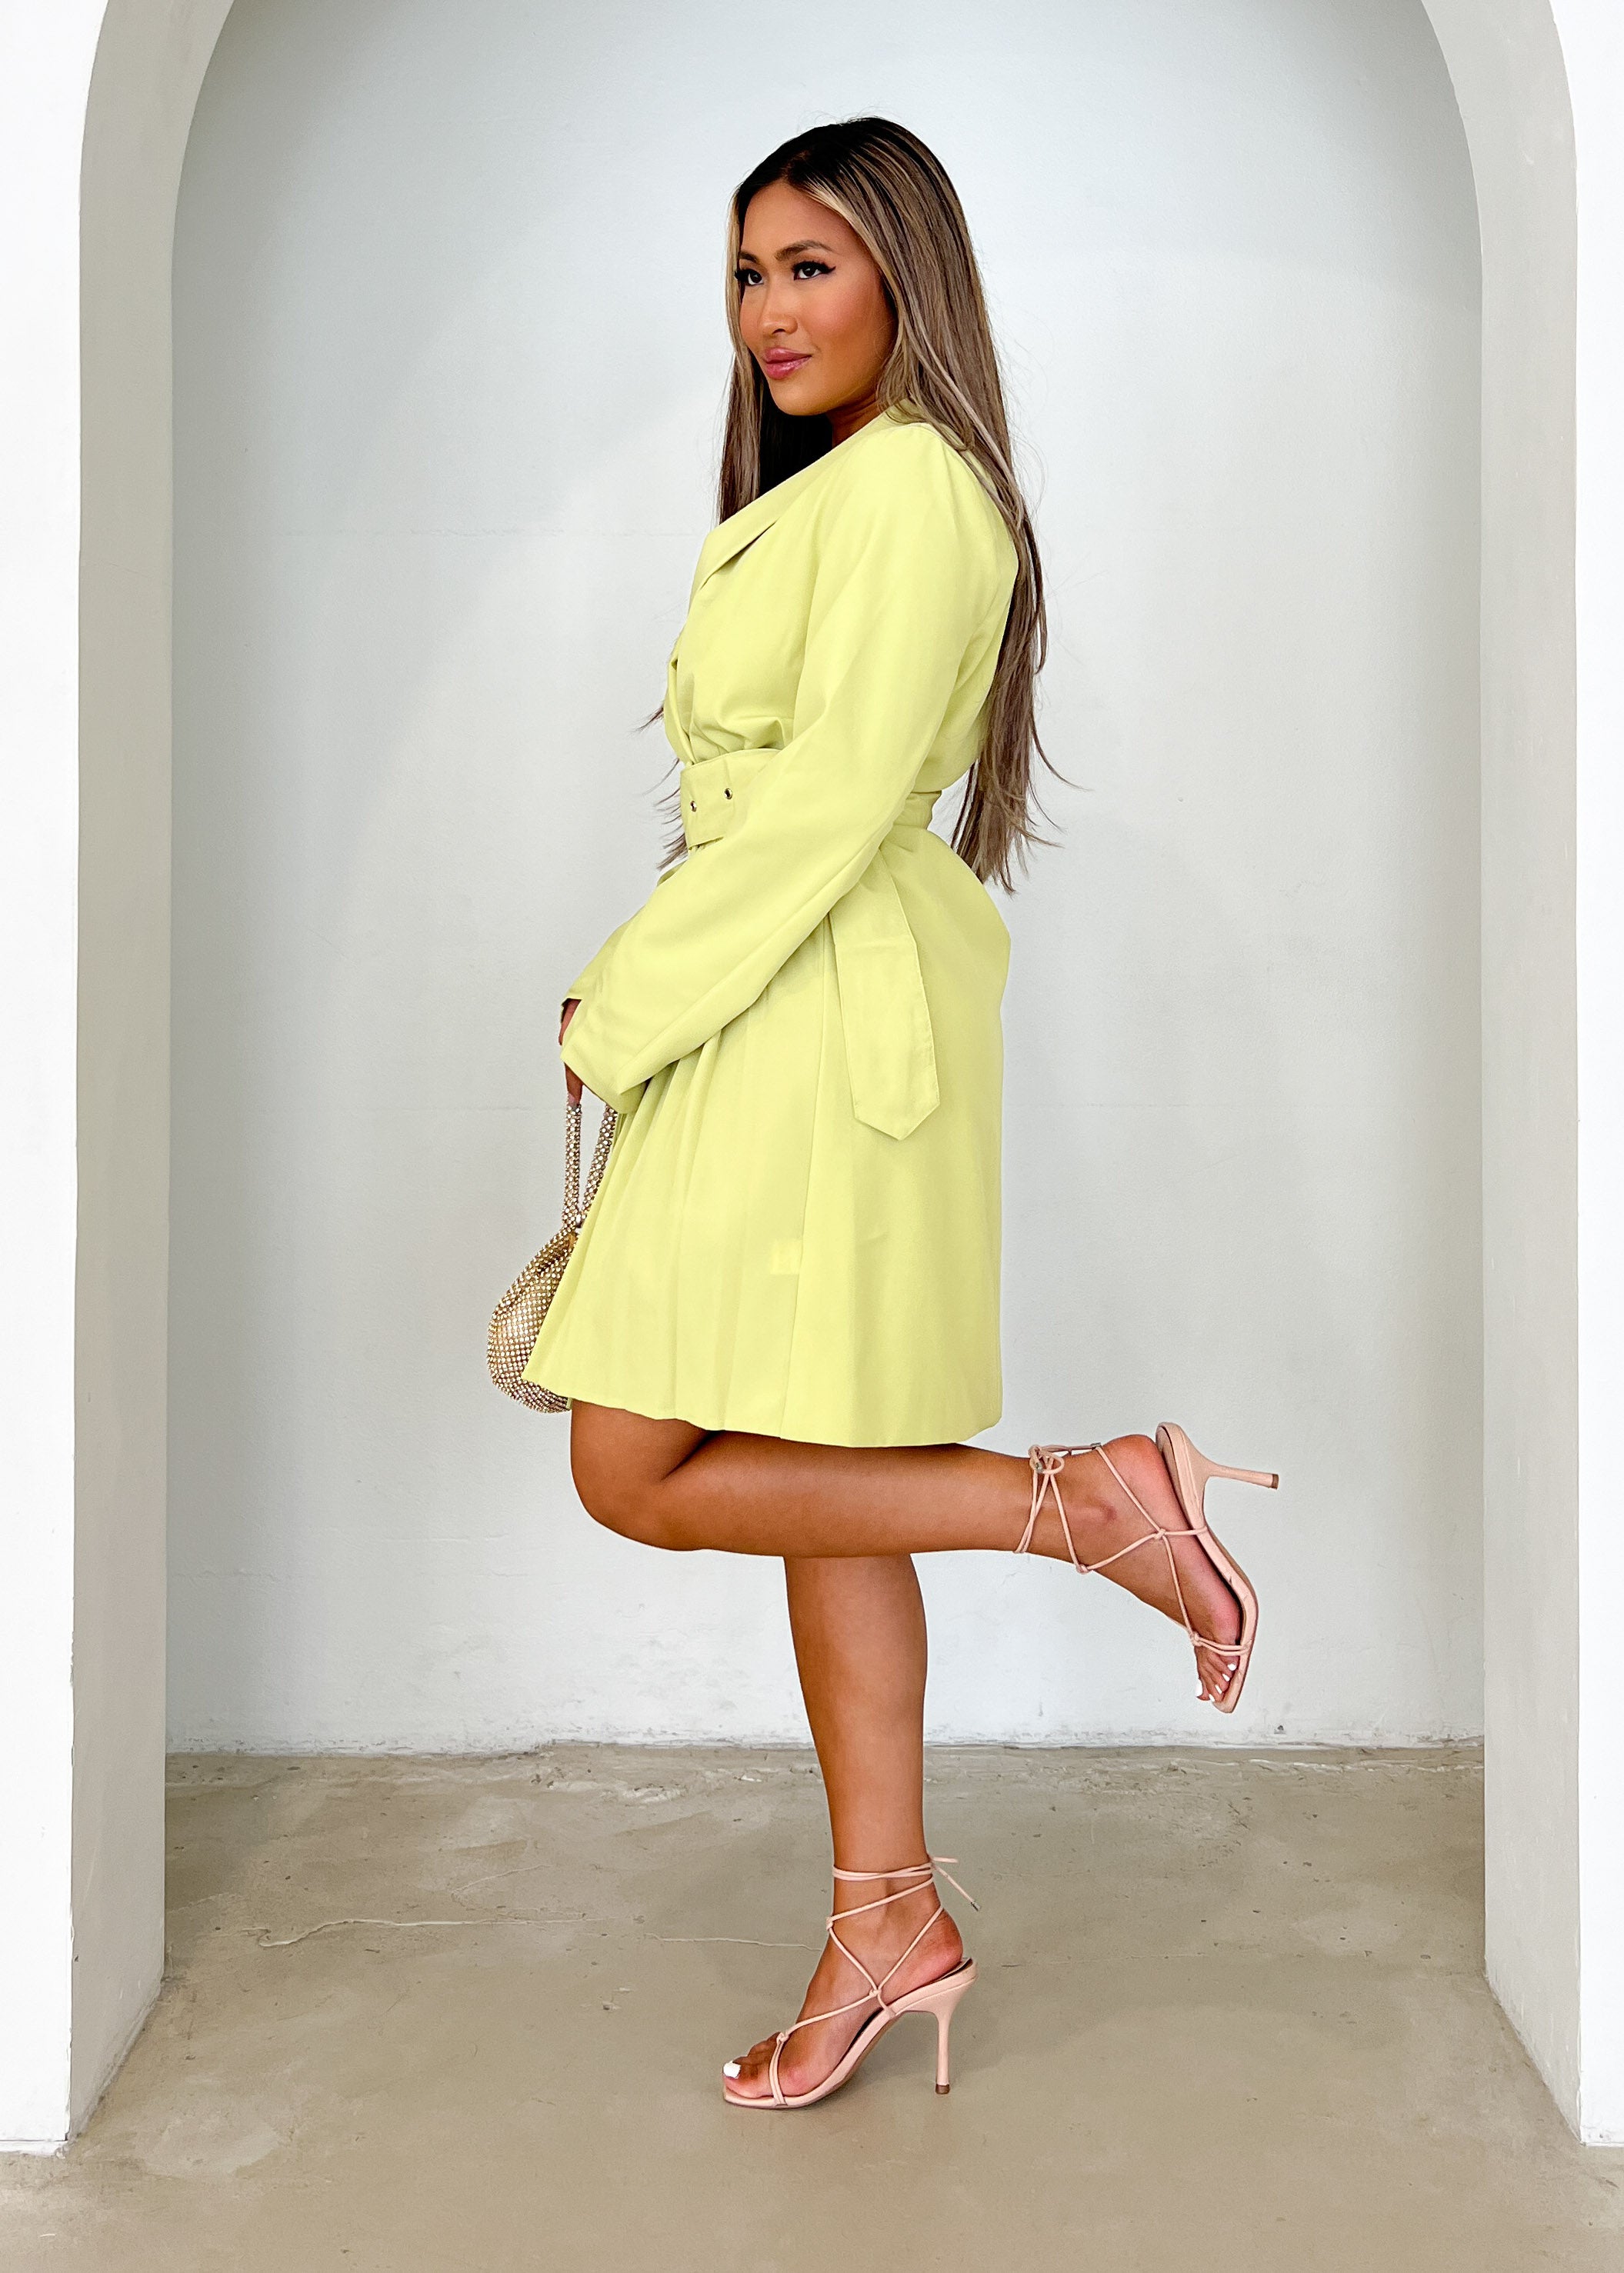 Elizah Blazer Dress - Lime